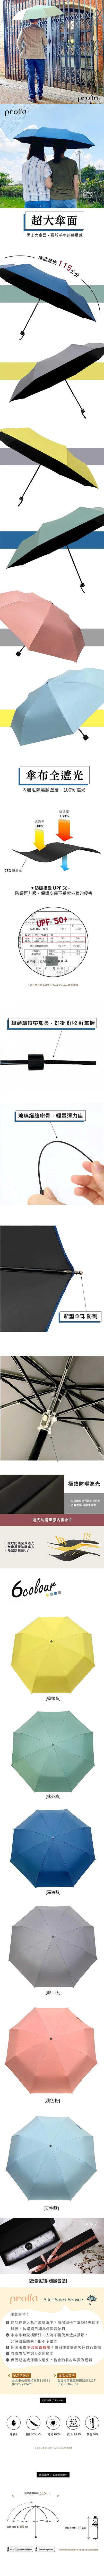 prolla秀裕-65CM黑膠大傘面馬卡龍色折傘-產品描述